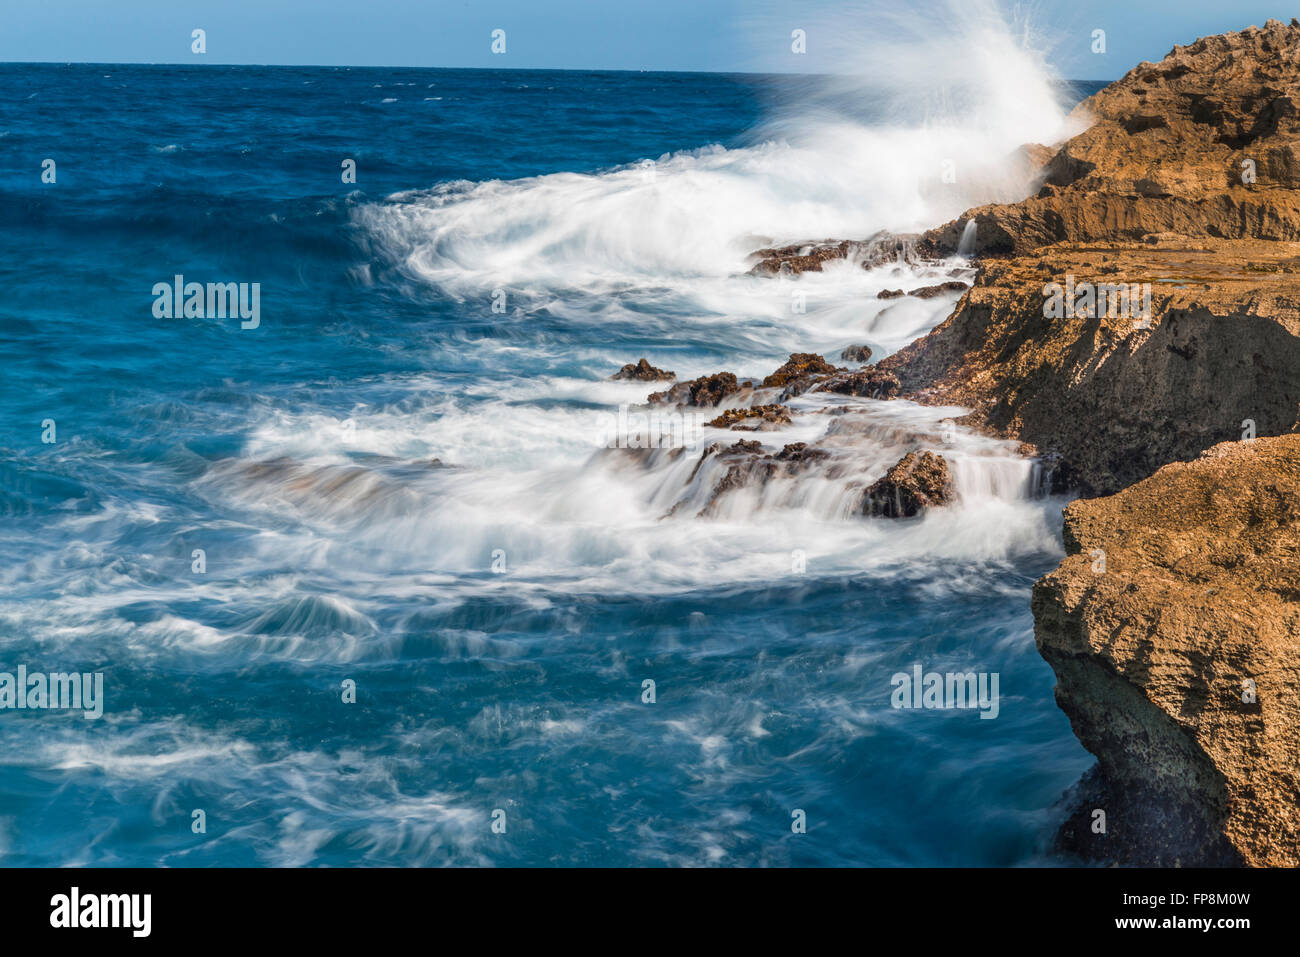 Crashing waves over the rocks on the Island of Eleuthera, Bahamas Stock Photo